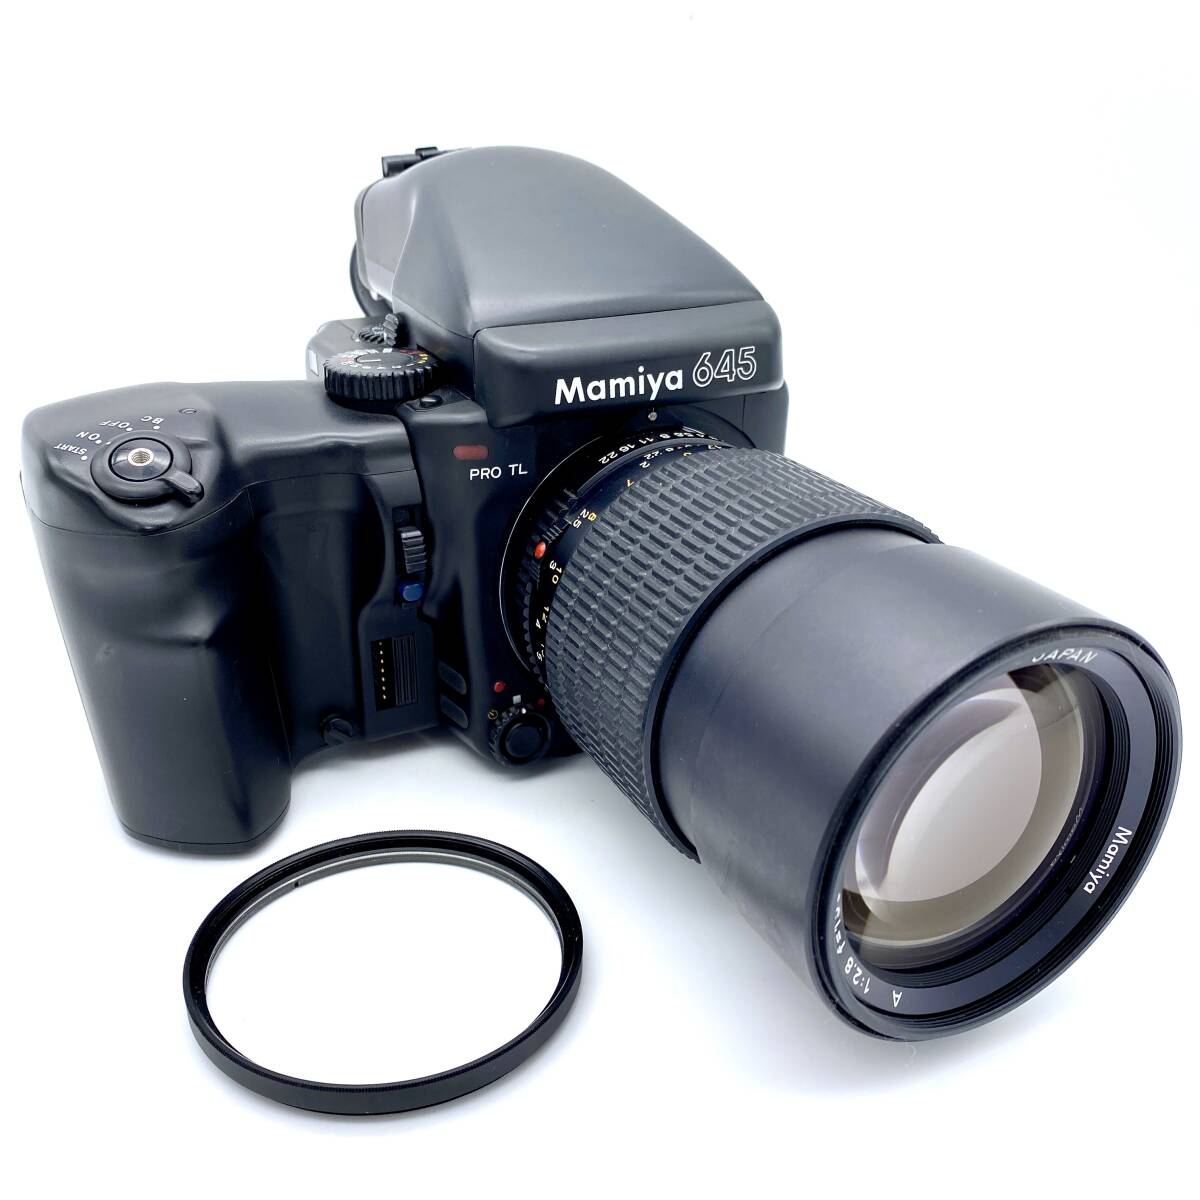 マミヤ M645 1000S F2.8 80mm F4 210mm 中判カメラ - フィルムカメラ